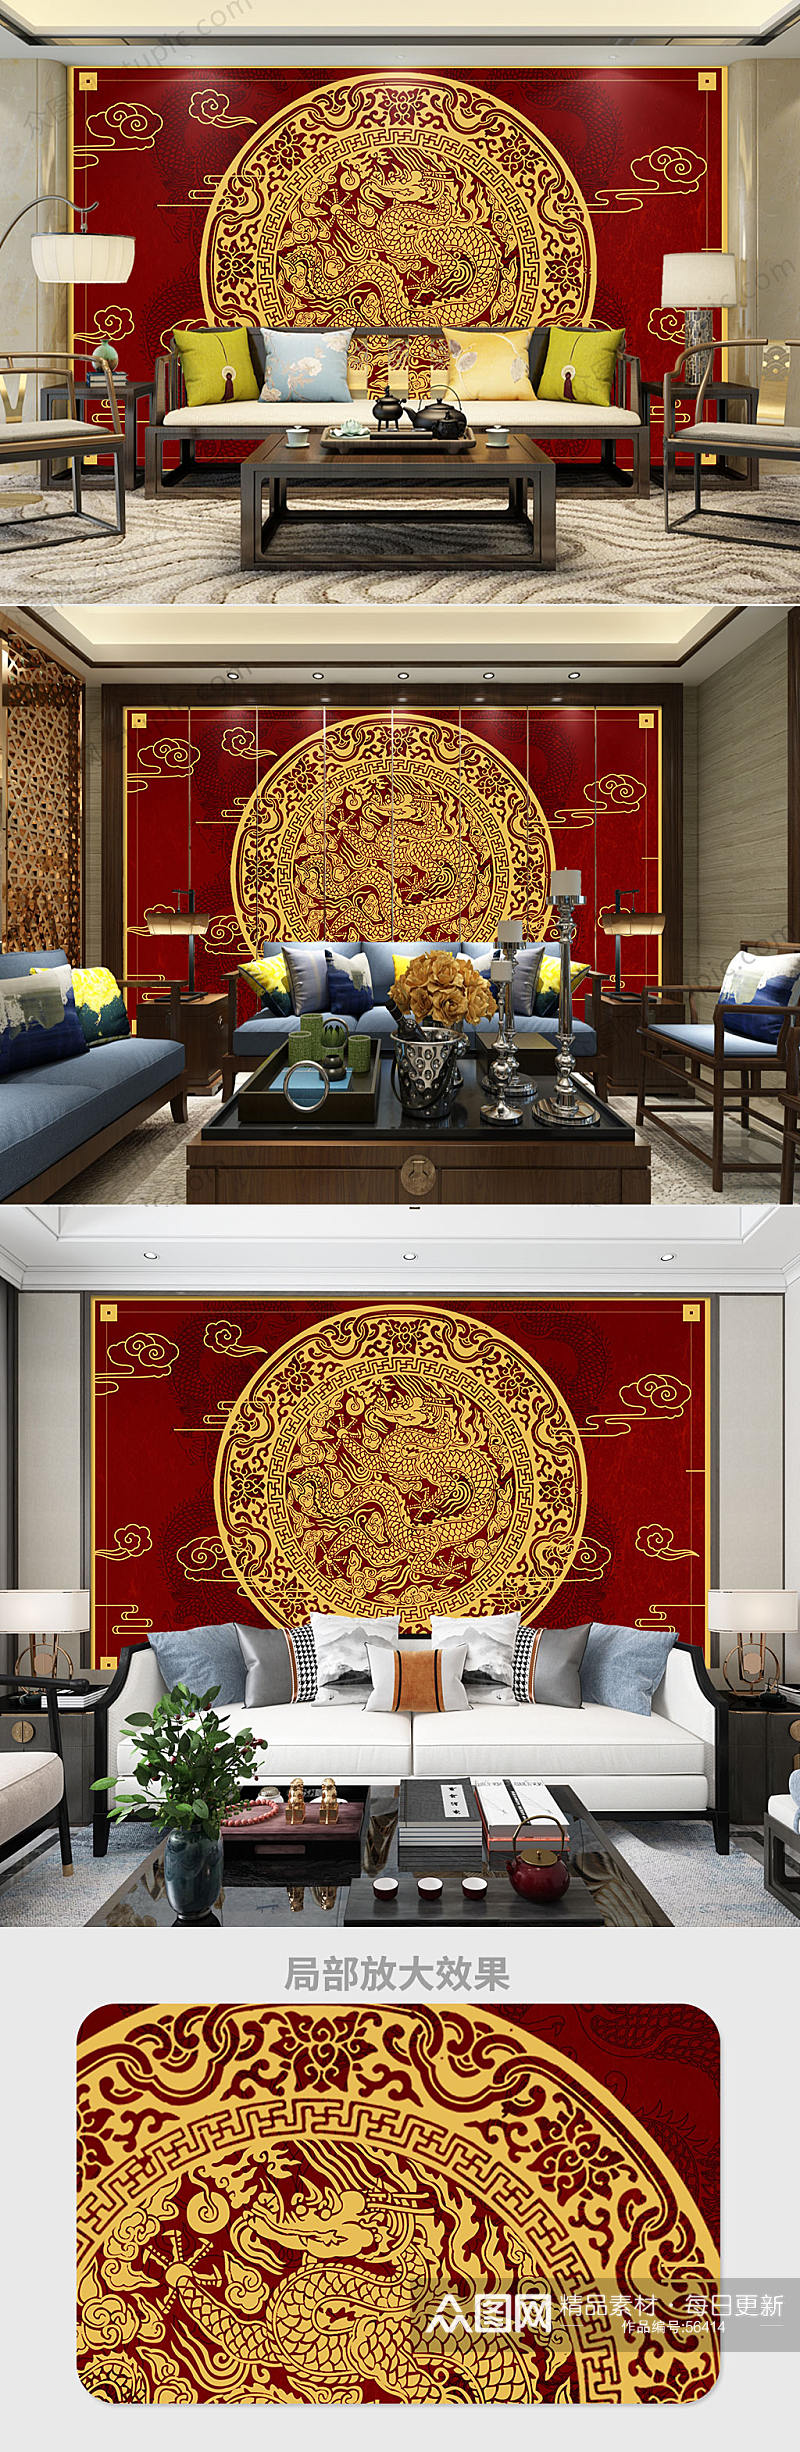 传统纹样中国龙背景墙素材